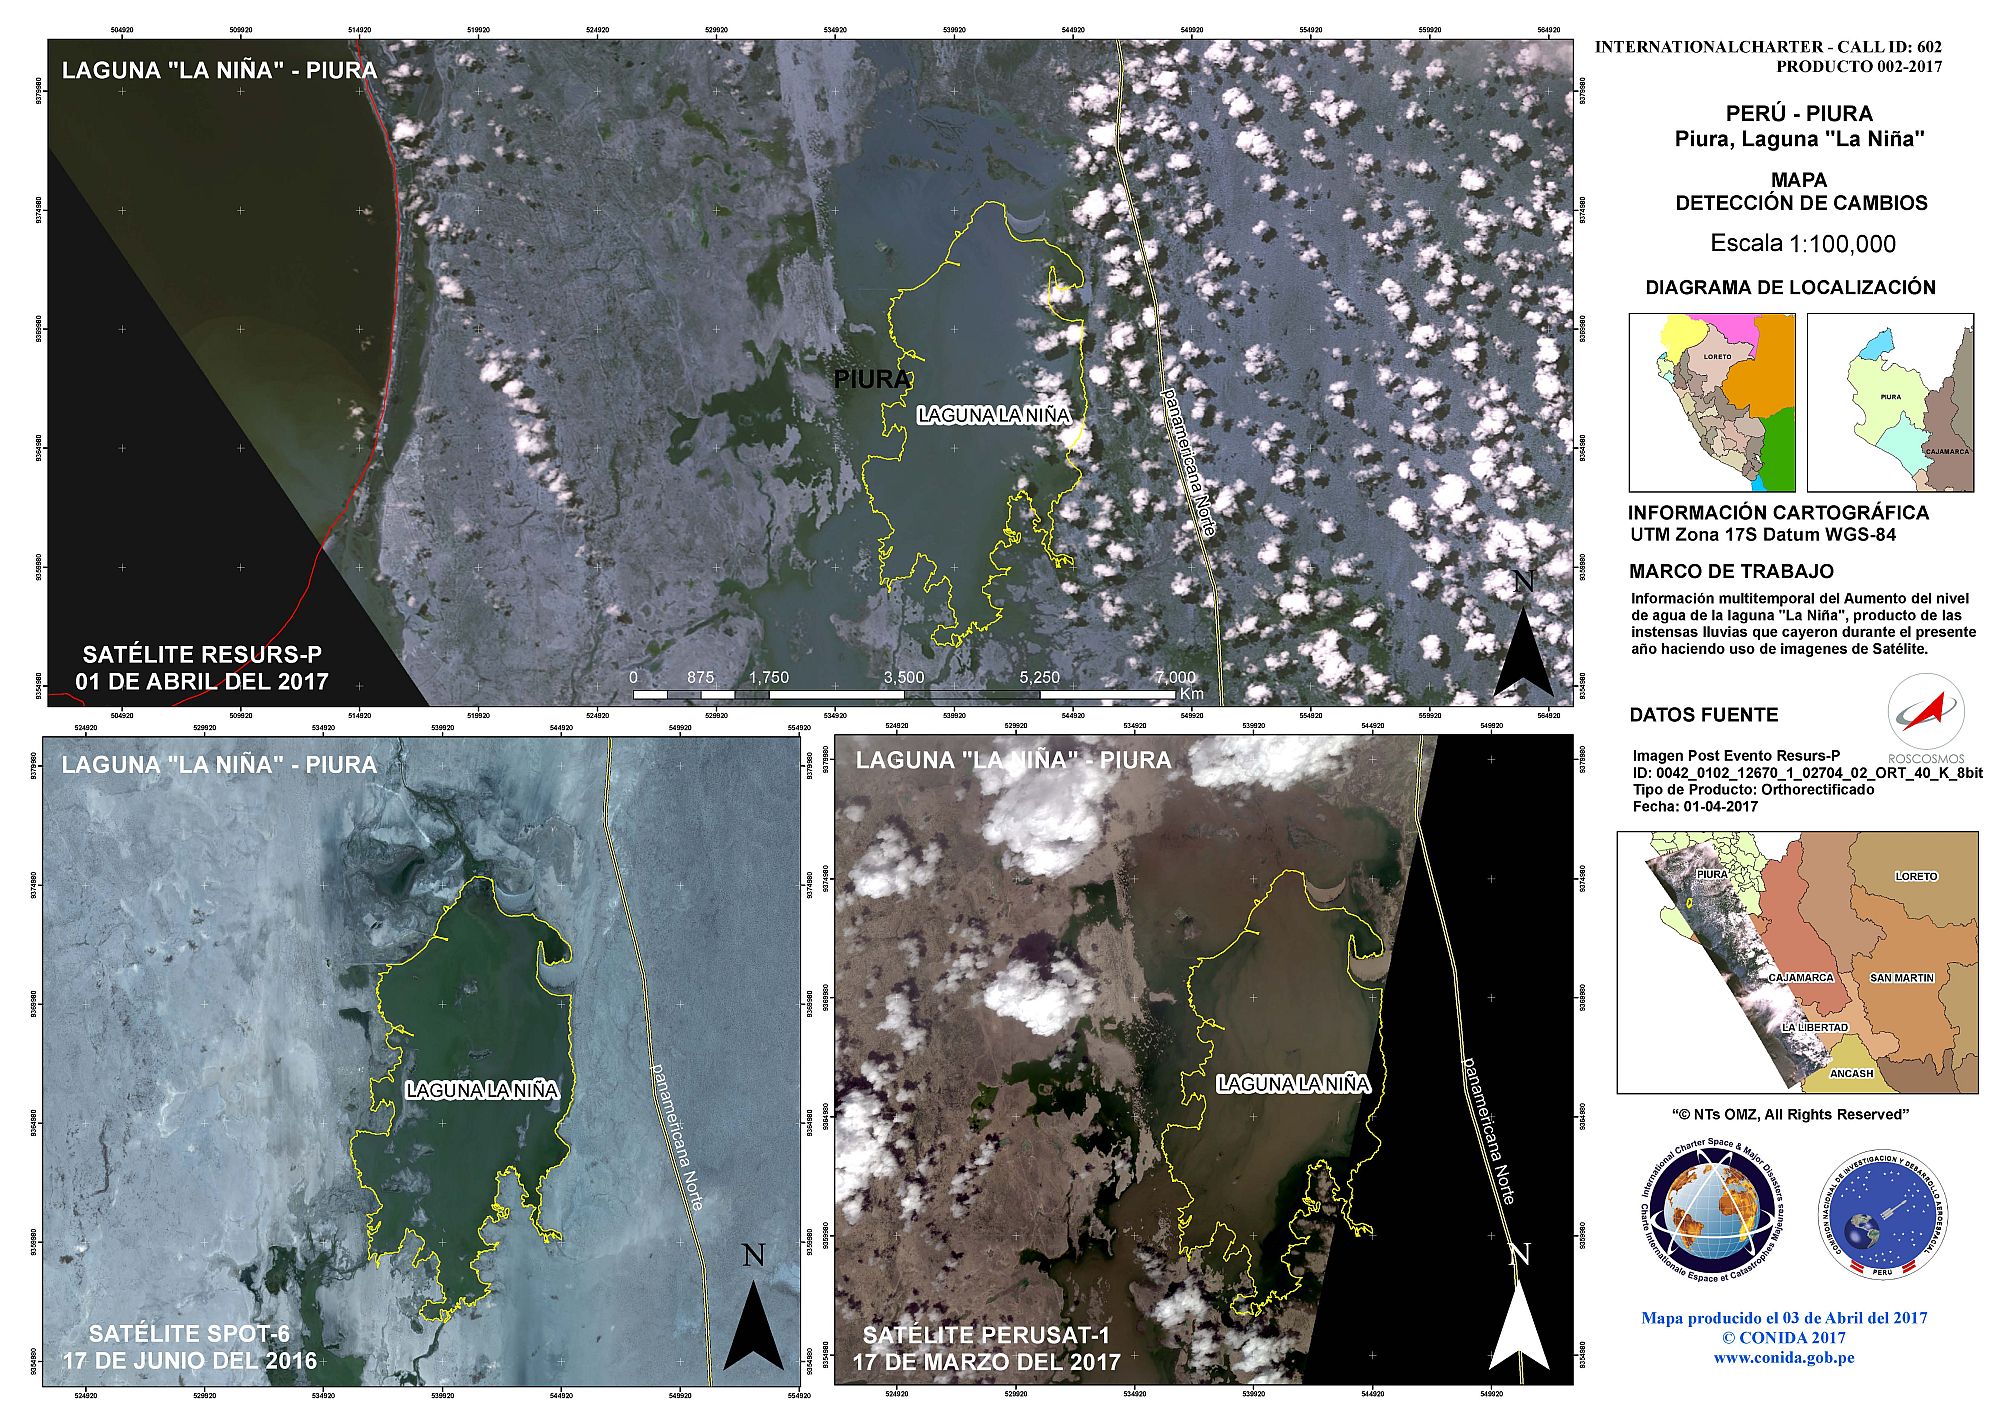 Karte zur Erkennung von Veränderungsprozessen an der Laguna La Nina in Piura